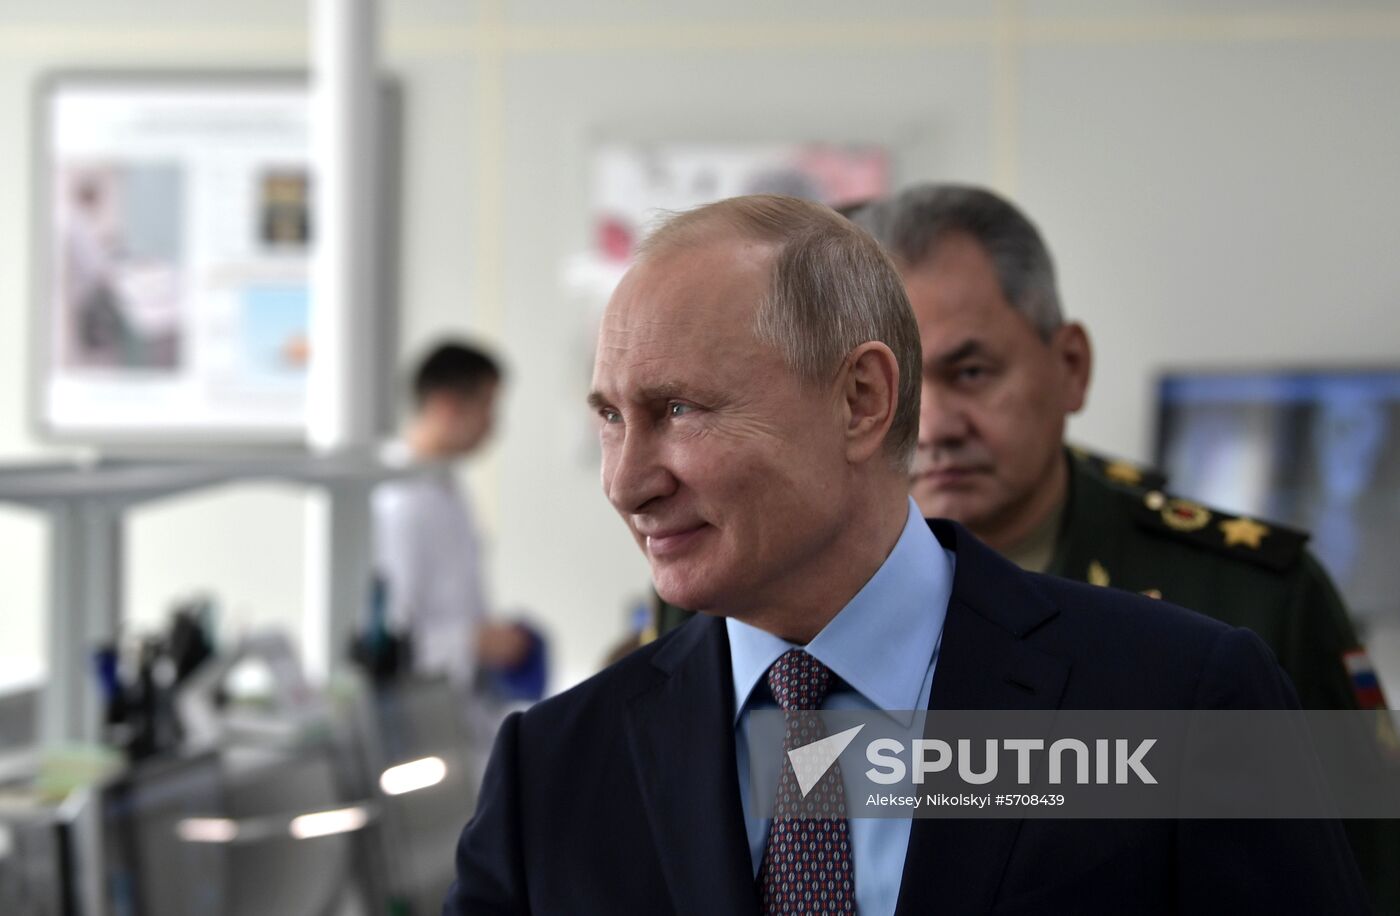 President Putin's working visit to Anapa